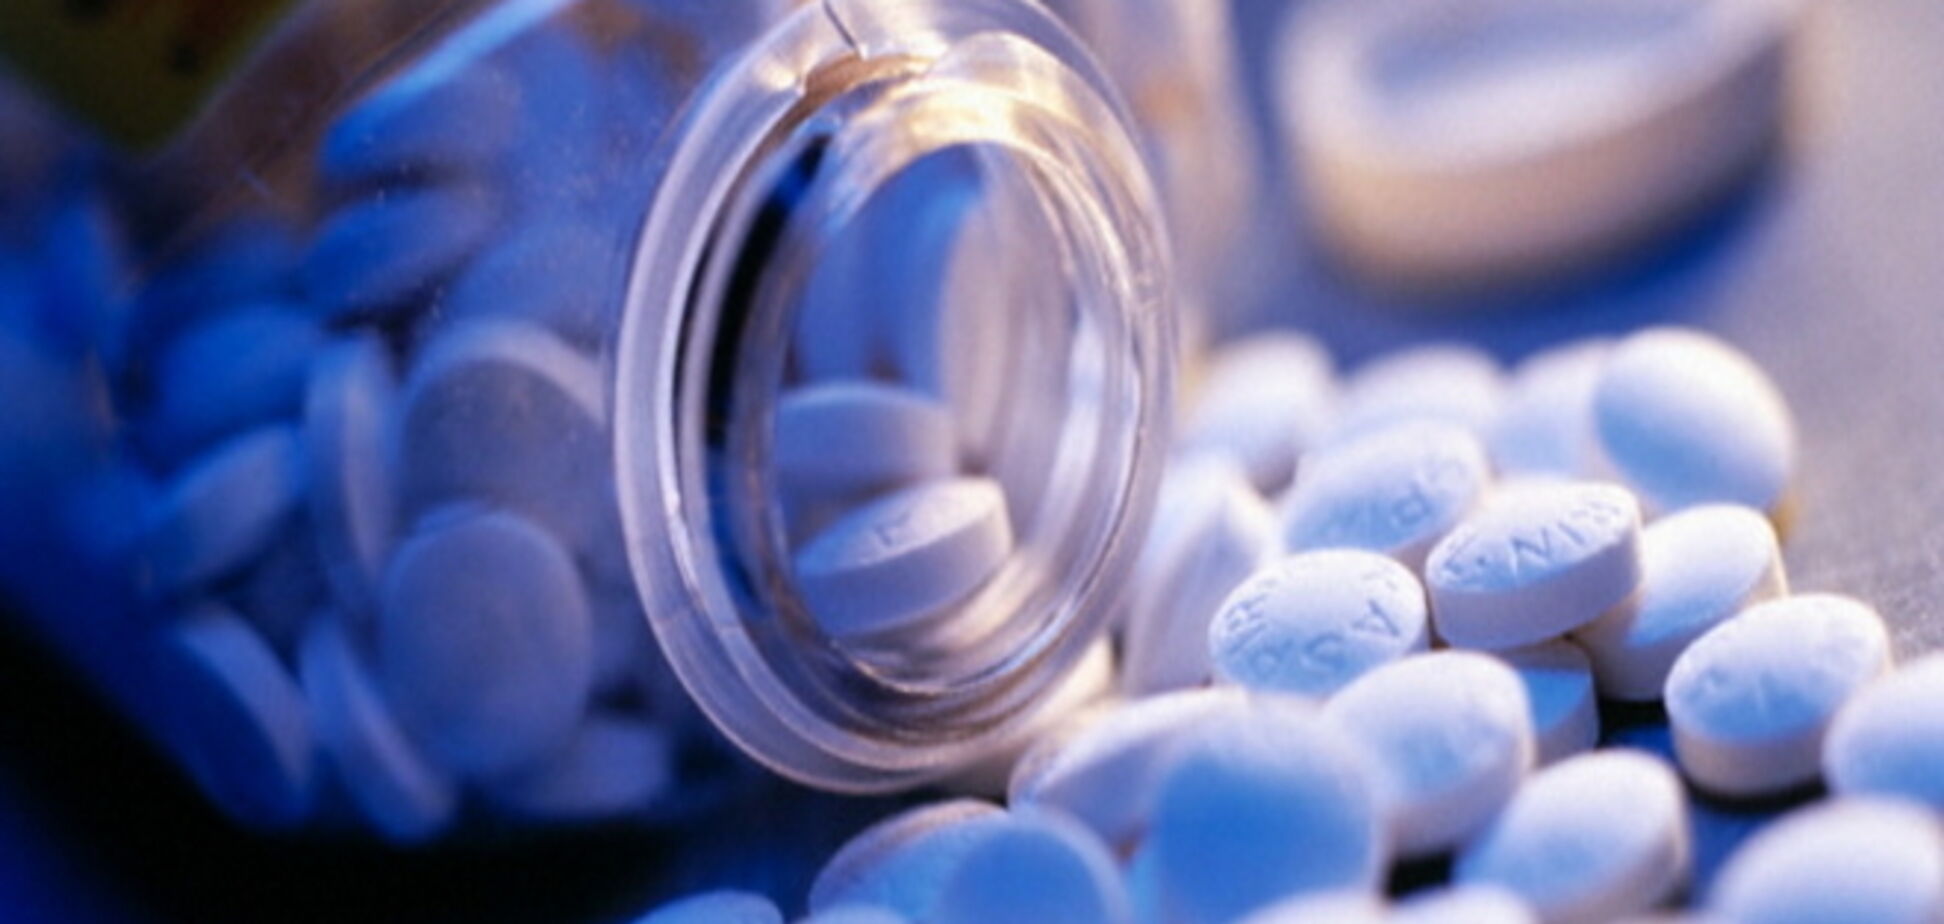 Аспирин уменьшает риск выкидыша - ученые